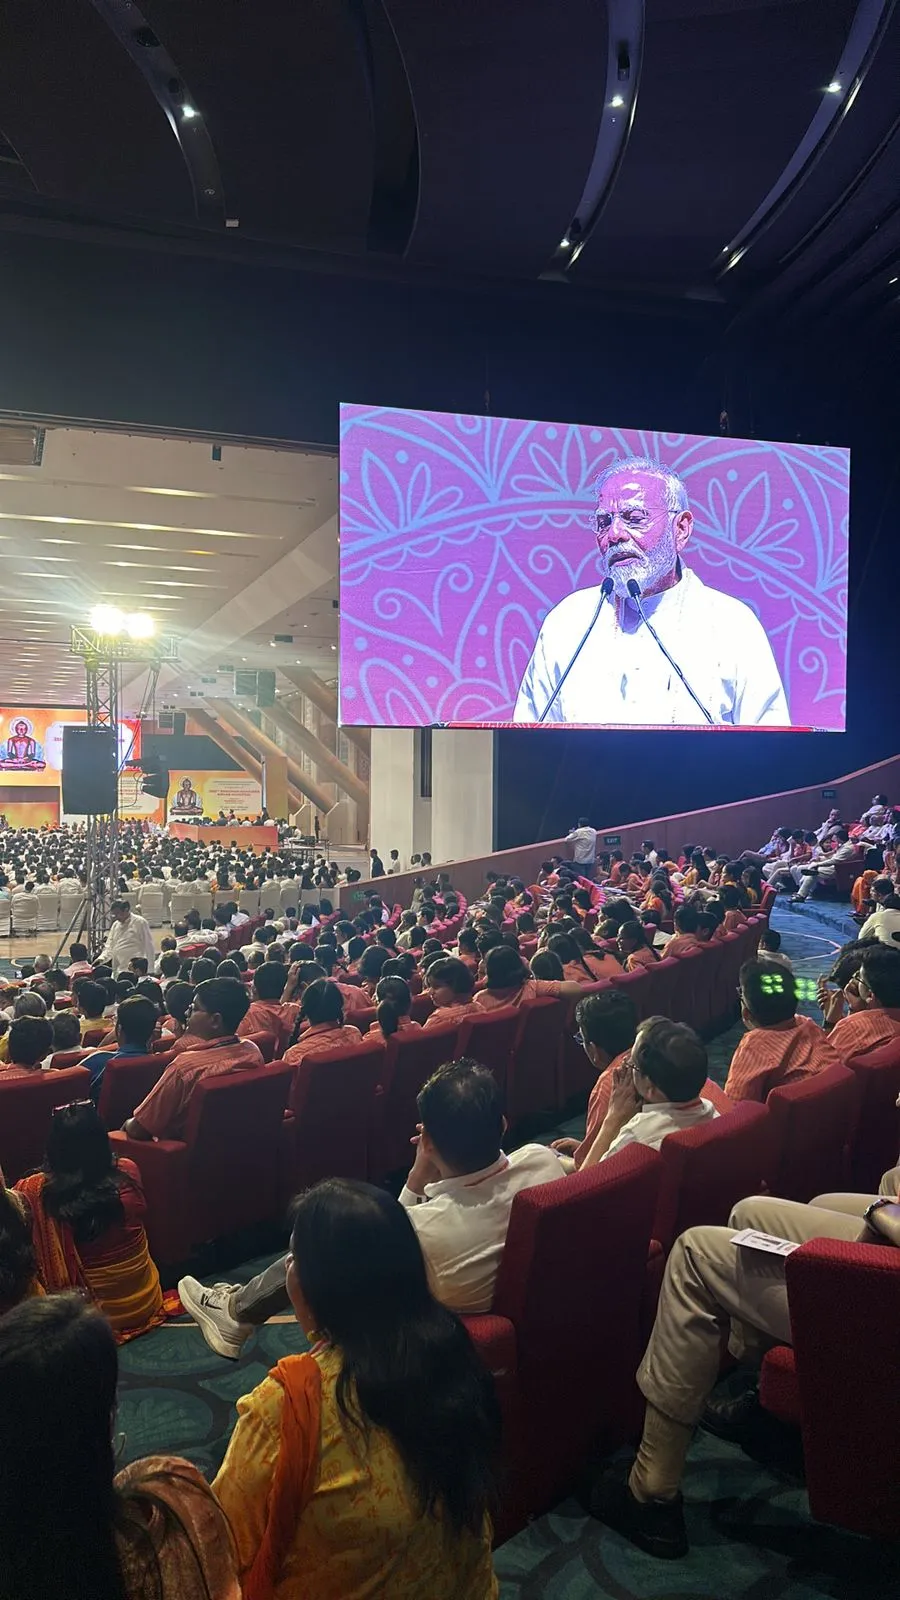 भगवान महावीर के 2550 वें निर्वाण महोत्सव का प्रधानमंत्री नरेंद्र मोदी ने किया उद्घाटन